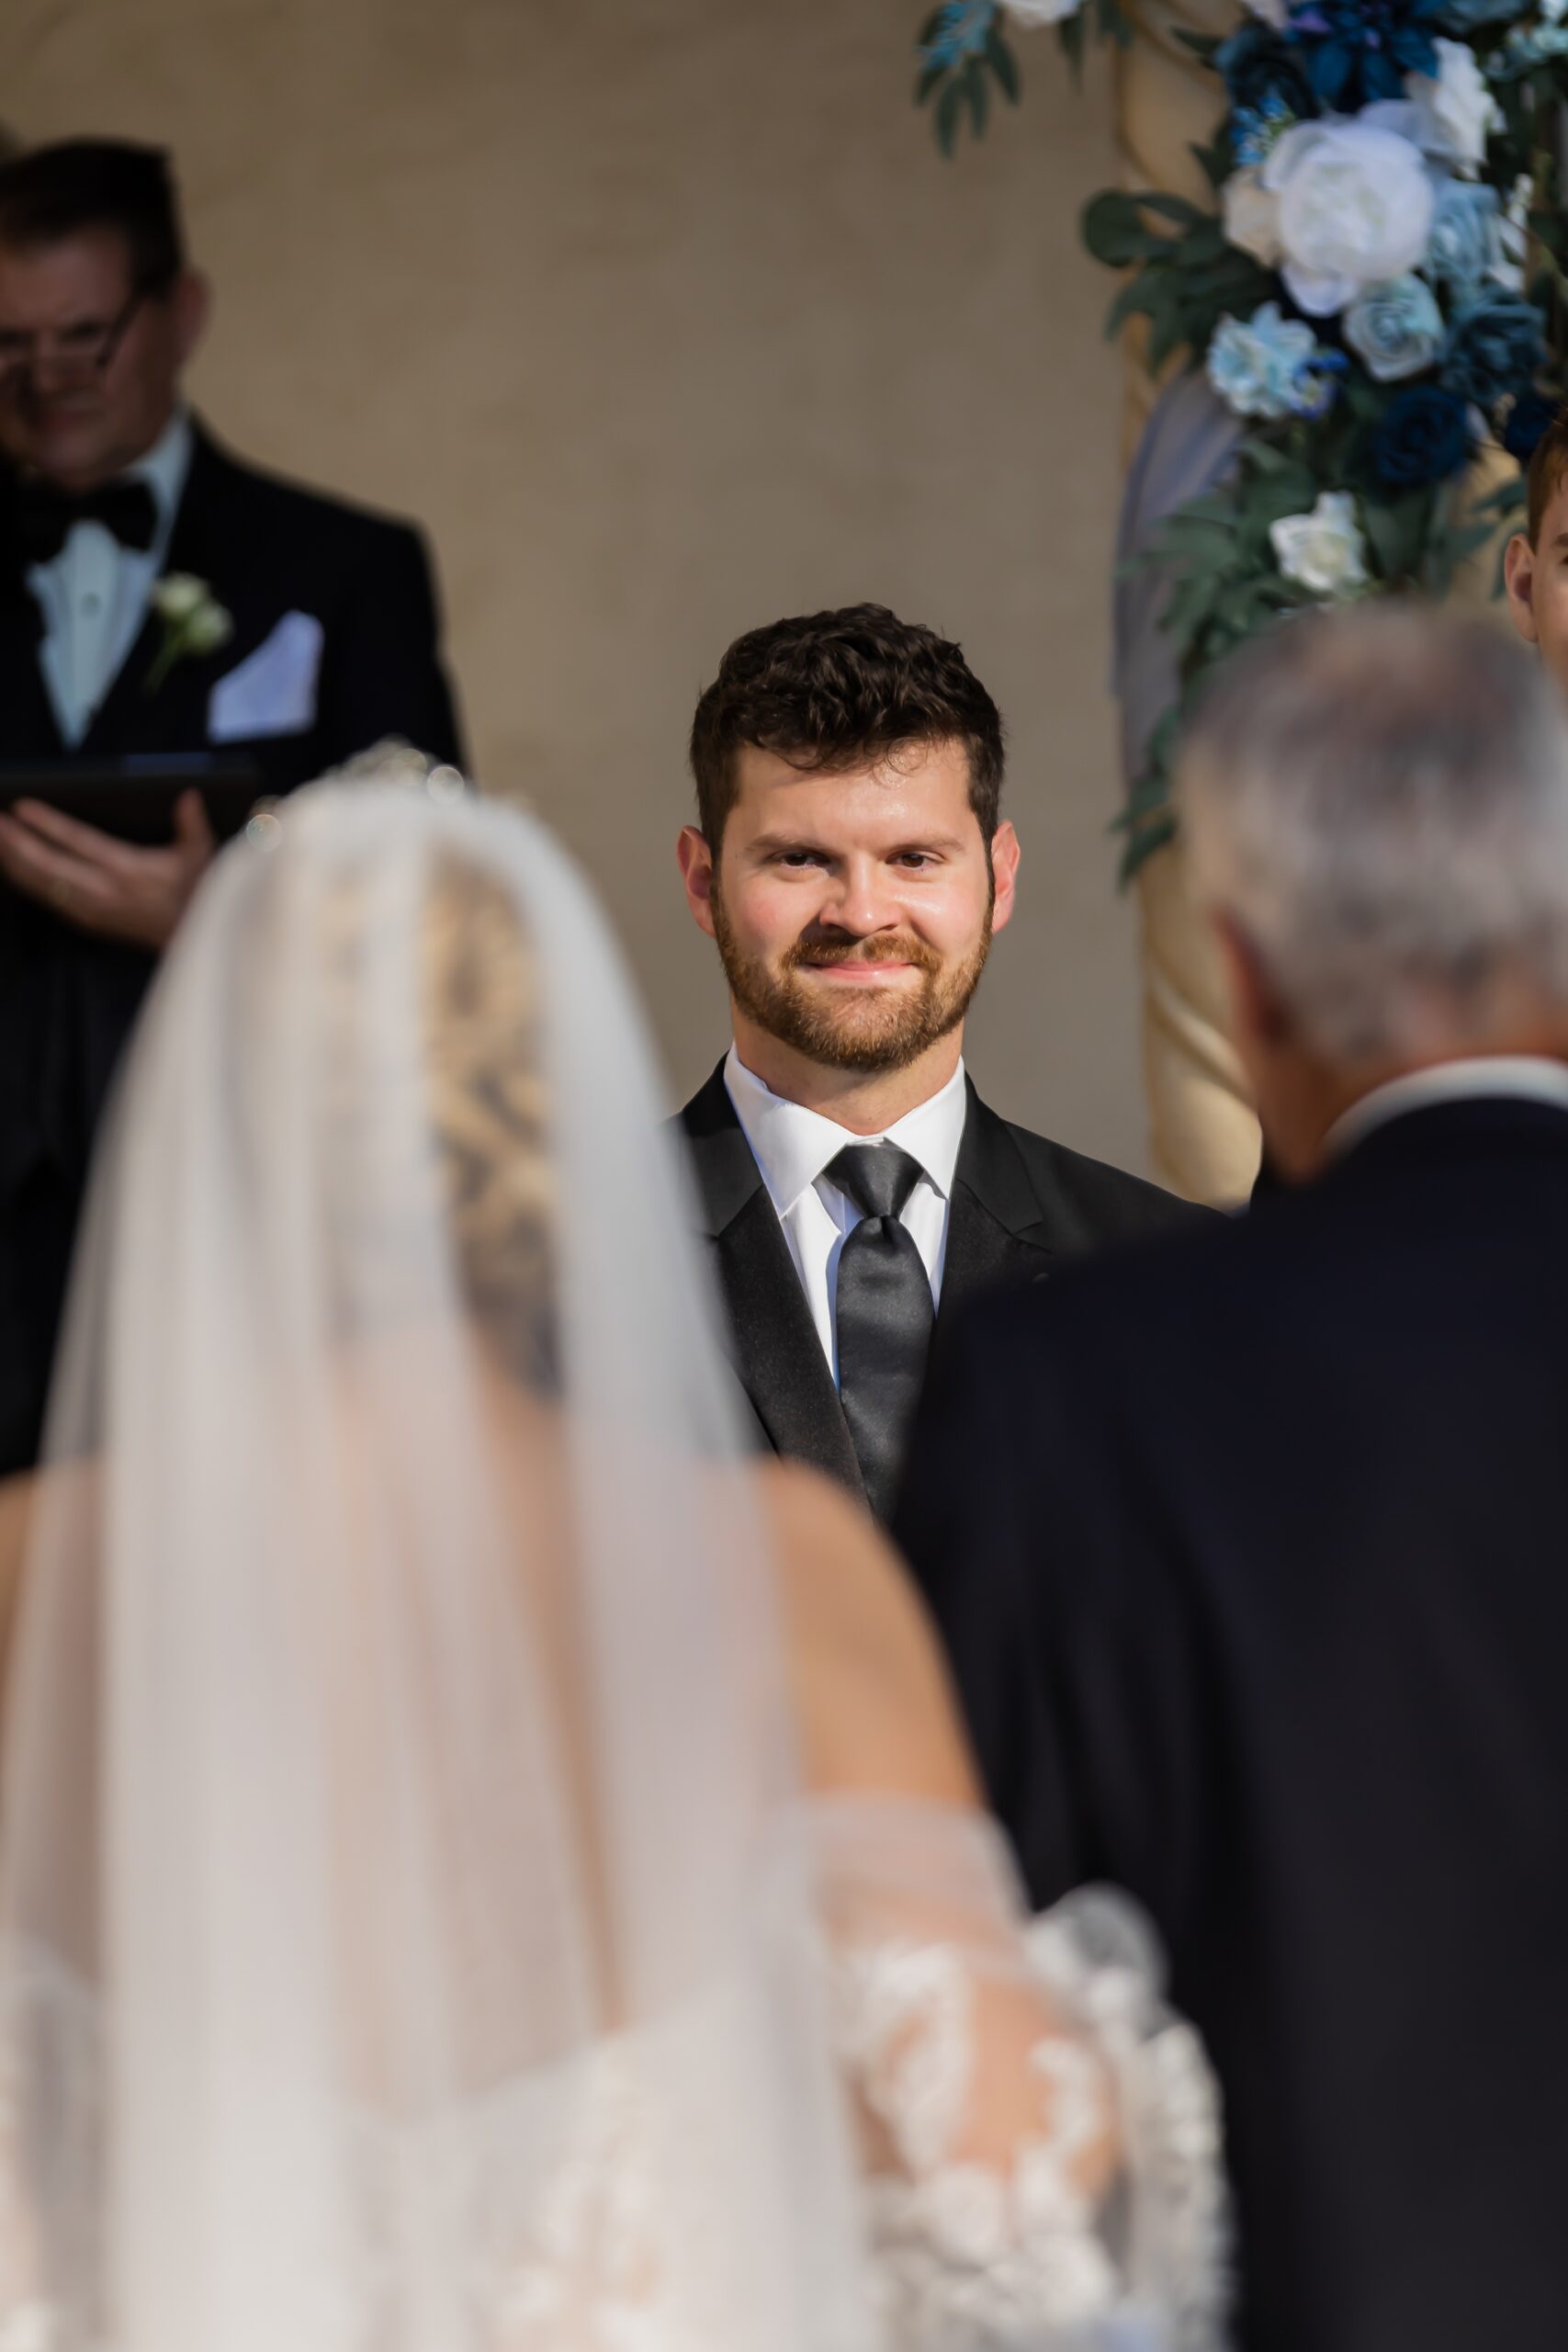 Groom watching his bride walk down the aisle